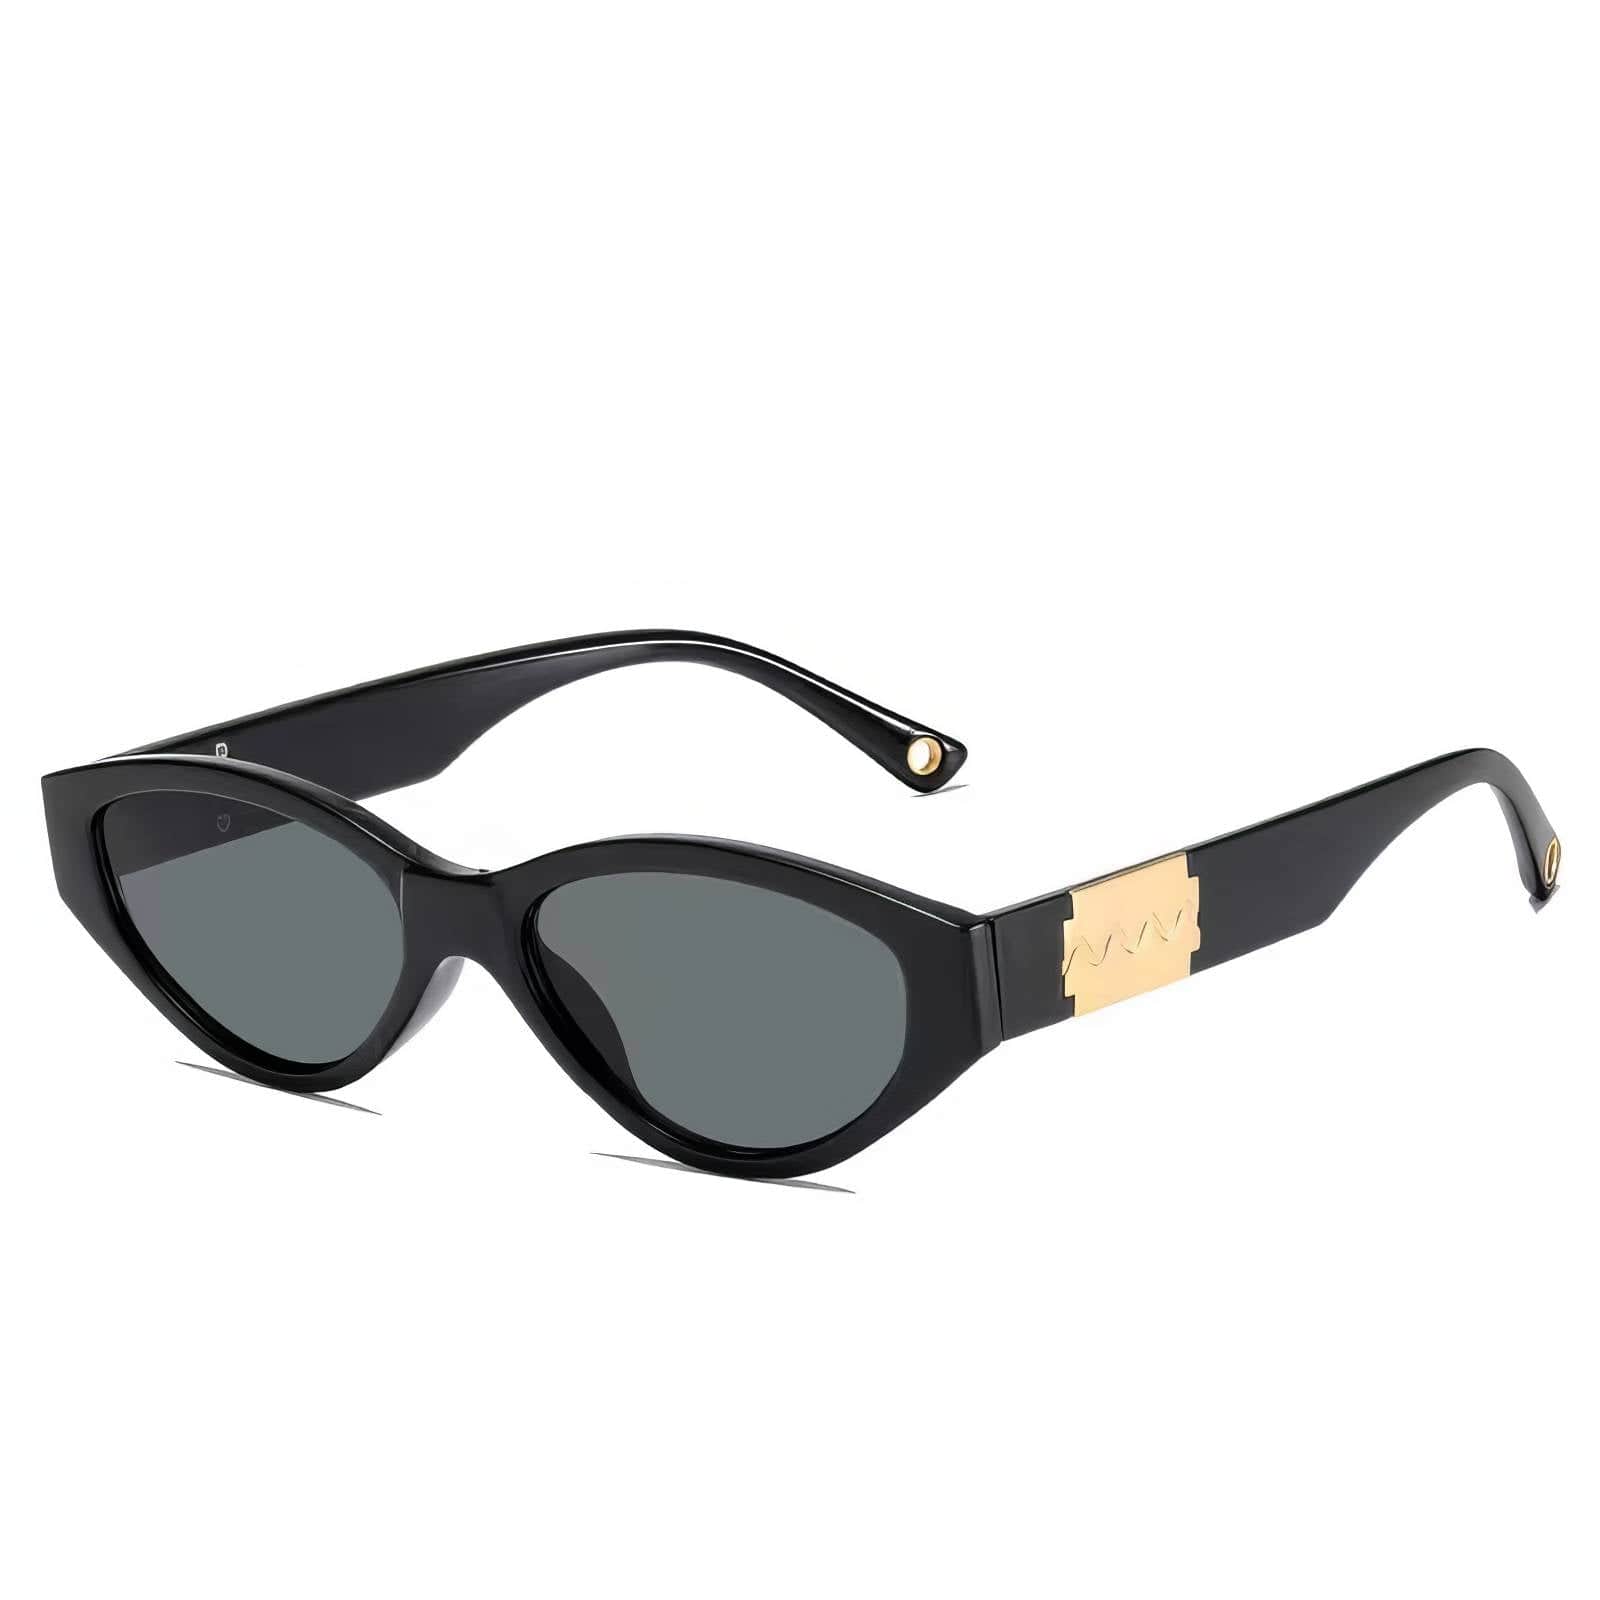 Fashion Trending Cat Eye Sunglasses Black / Resin